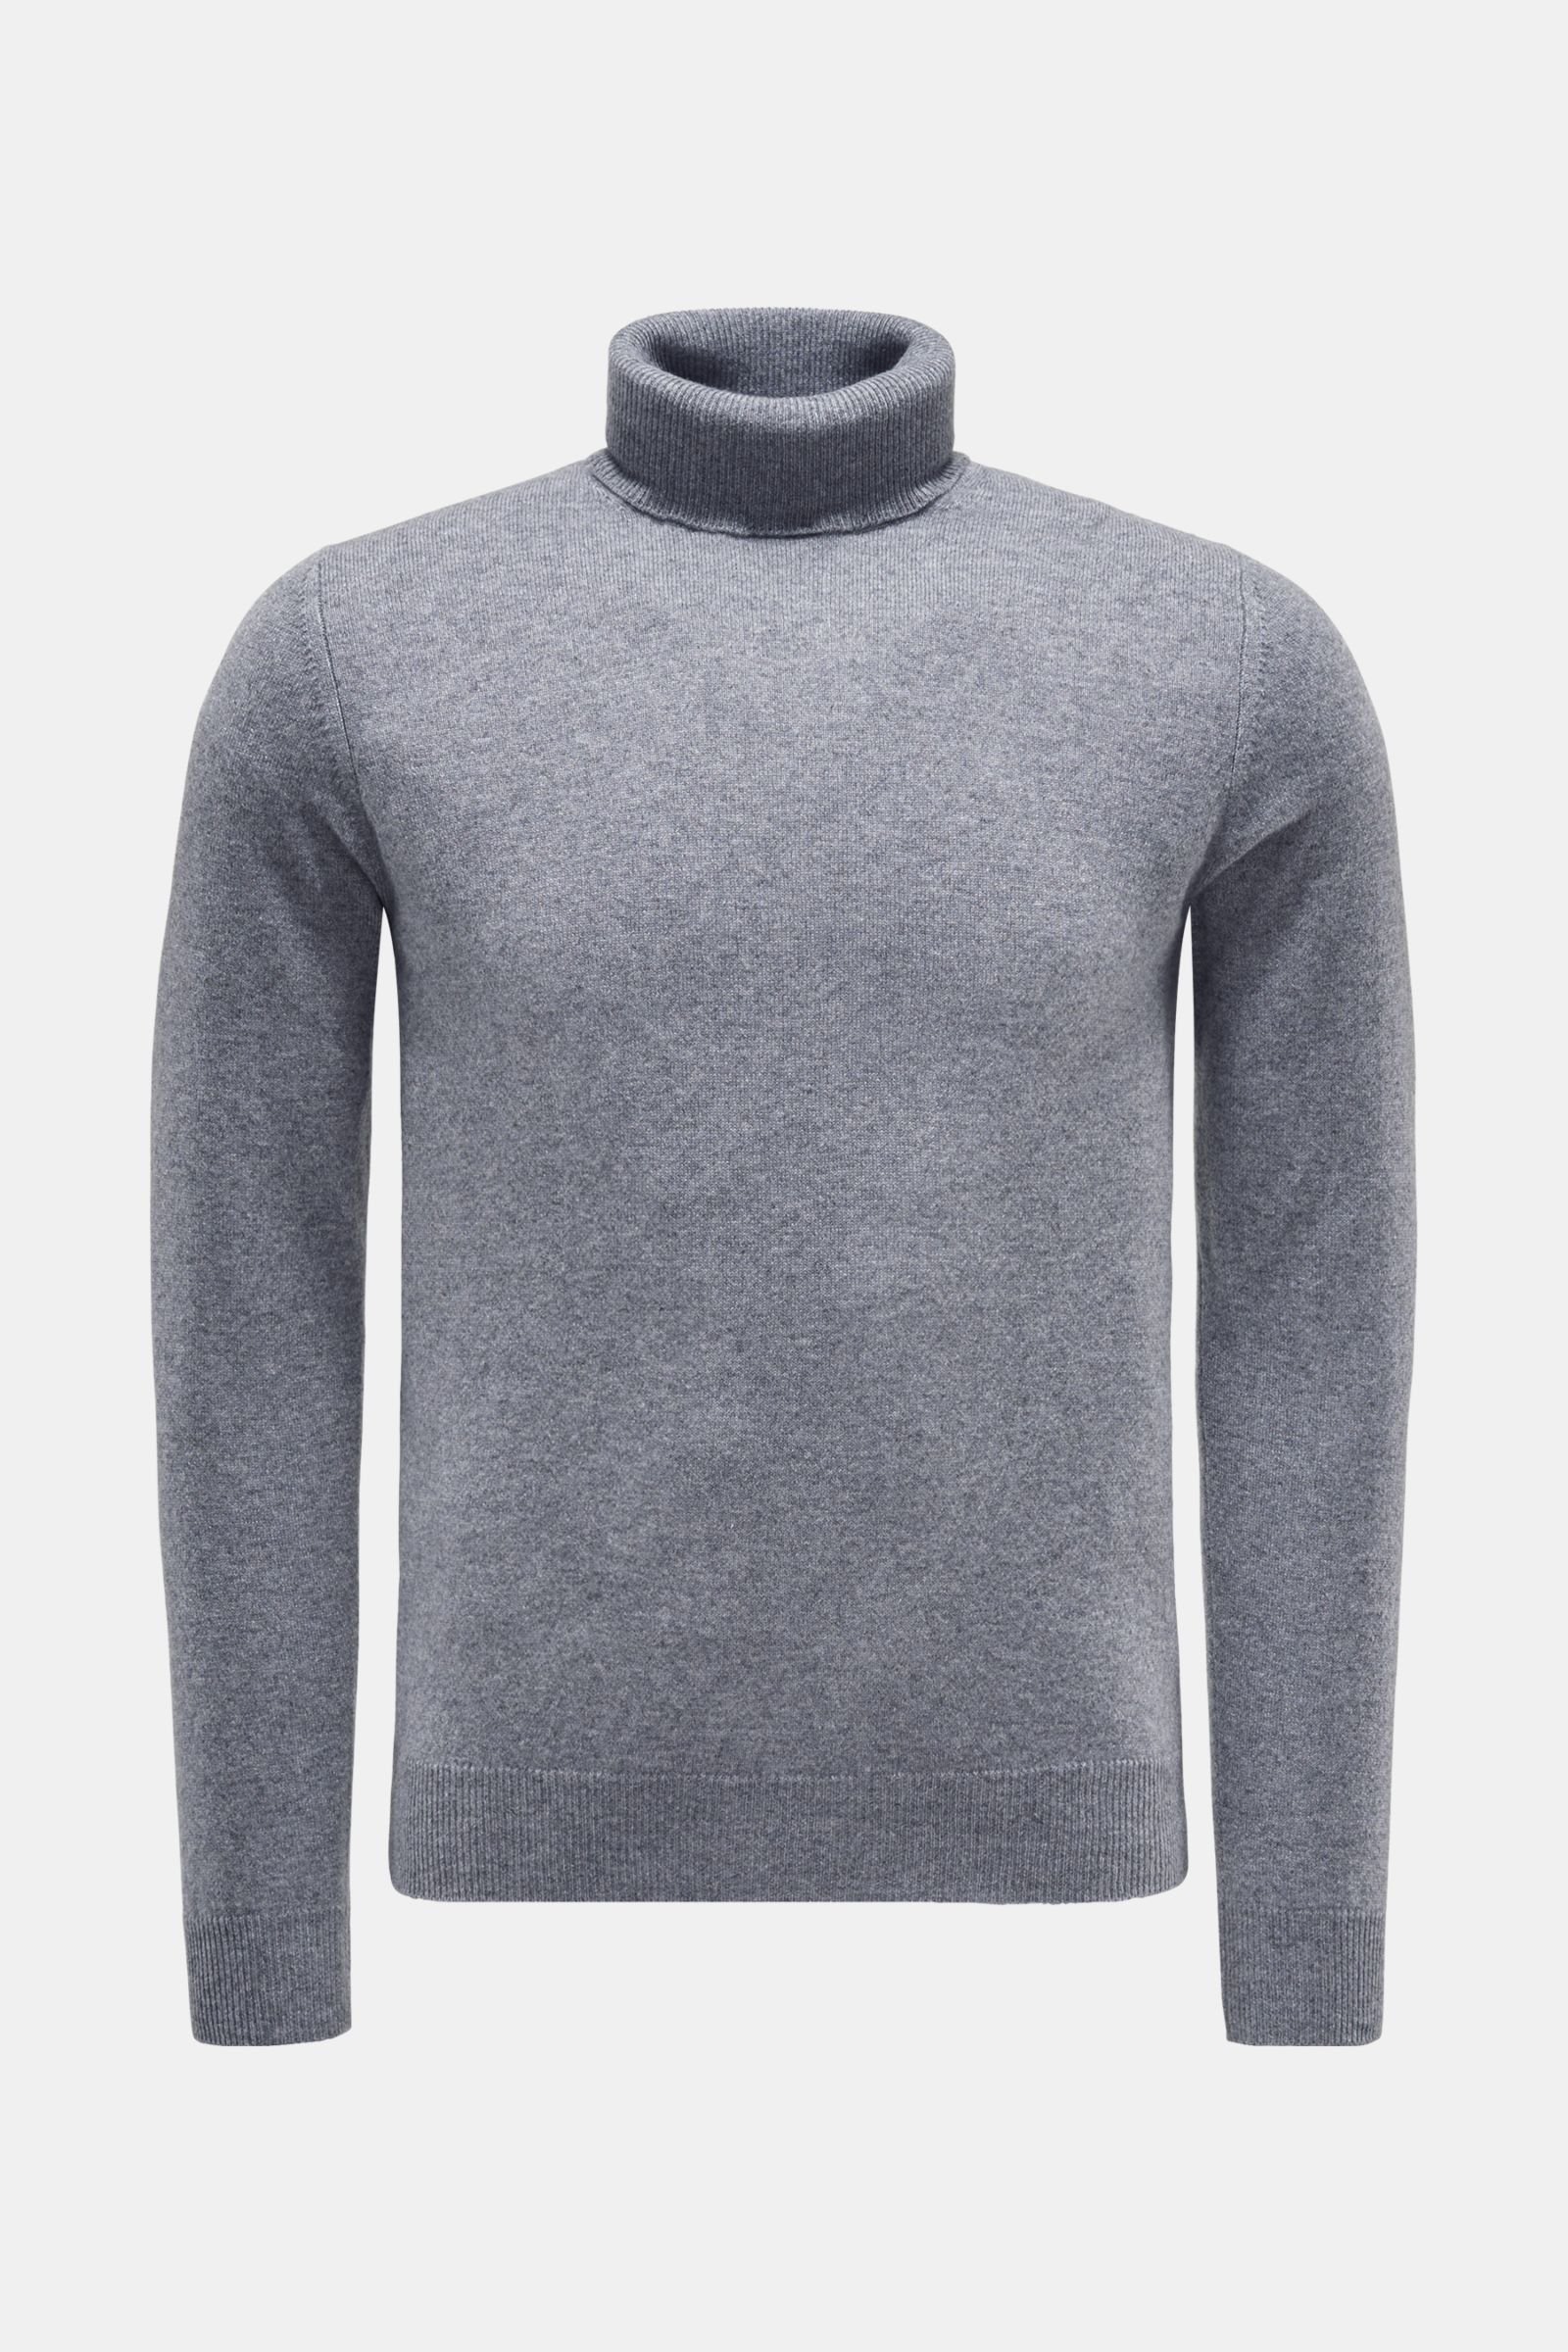 Cashmere turtleneck jumper grey